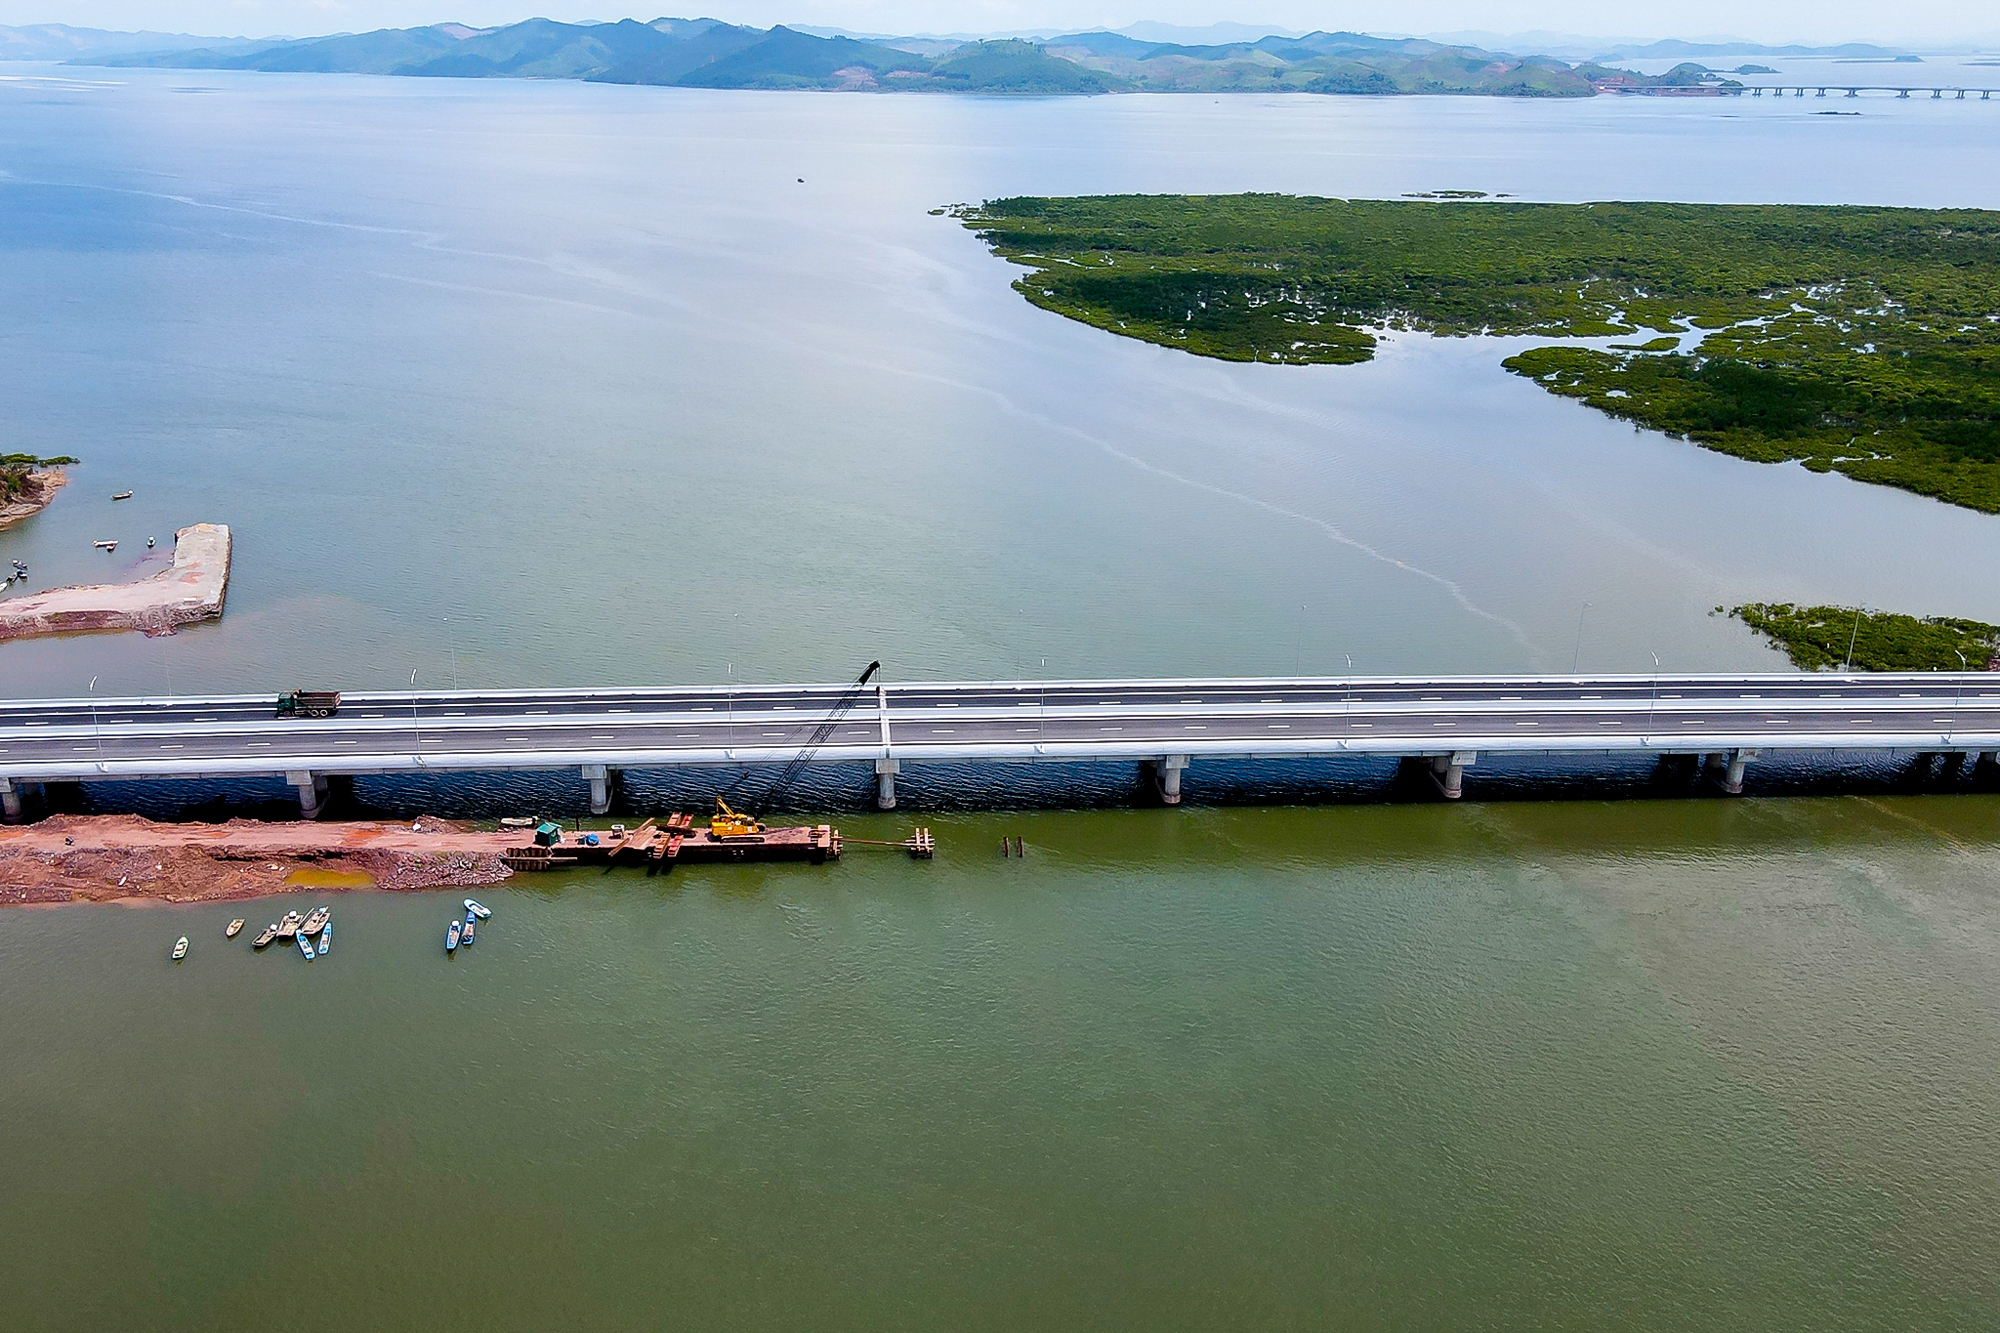 Cao tốc xuyên tỉnh dài nhất Việt Nam, trị giá gần 37.000 tỷ đồng - Ảnh 11.